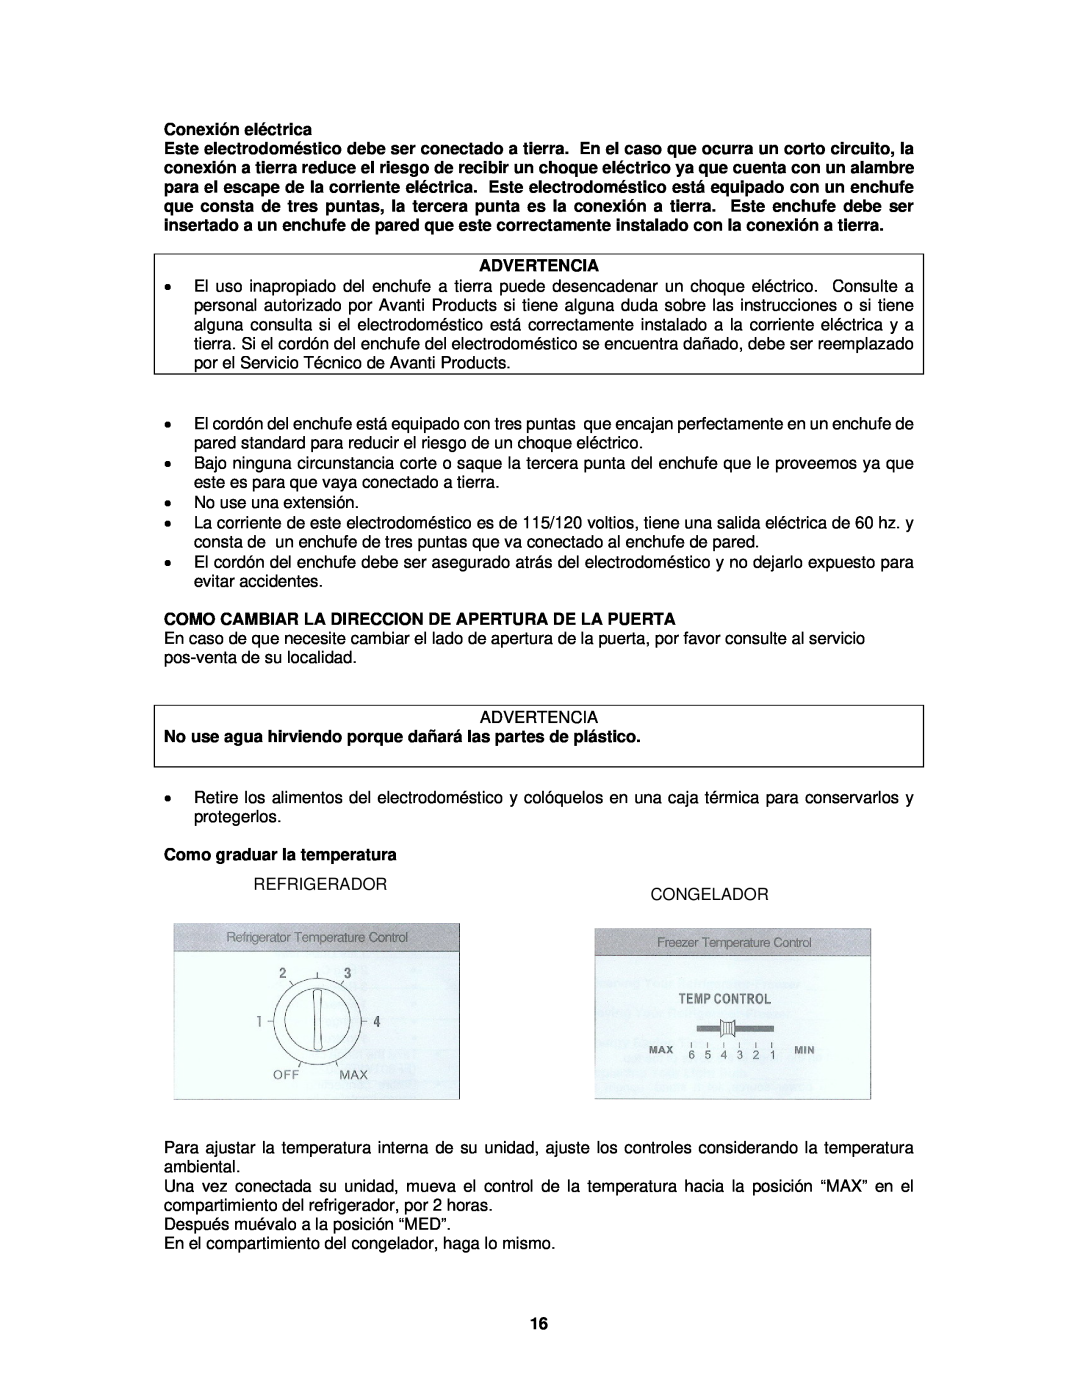 Avanti FF1008W, FF1009PS instruction manual Conexión eléctrica, Advertencia, Como graduar la temperatura 